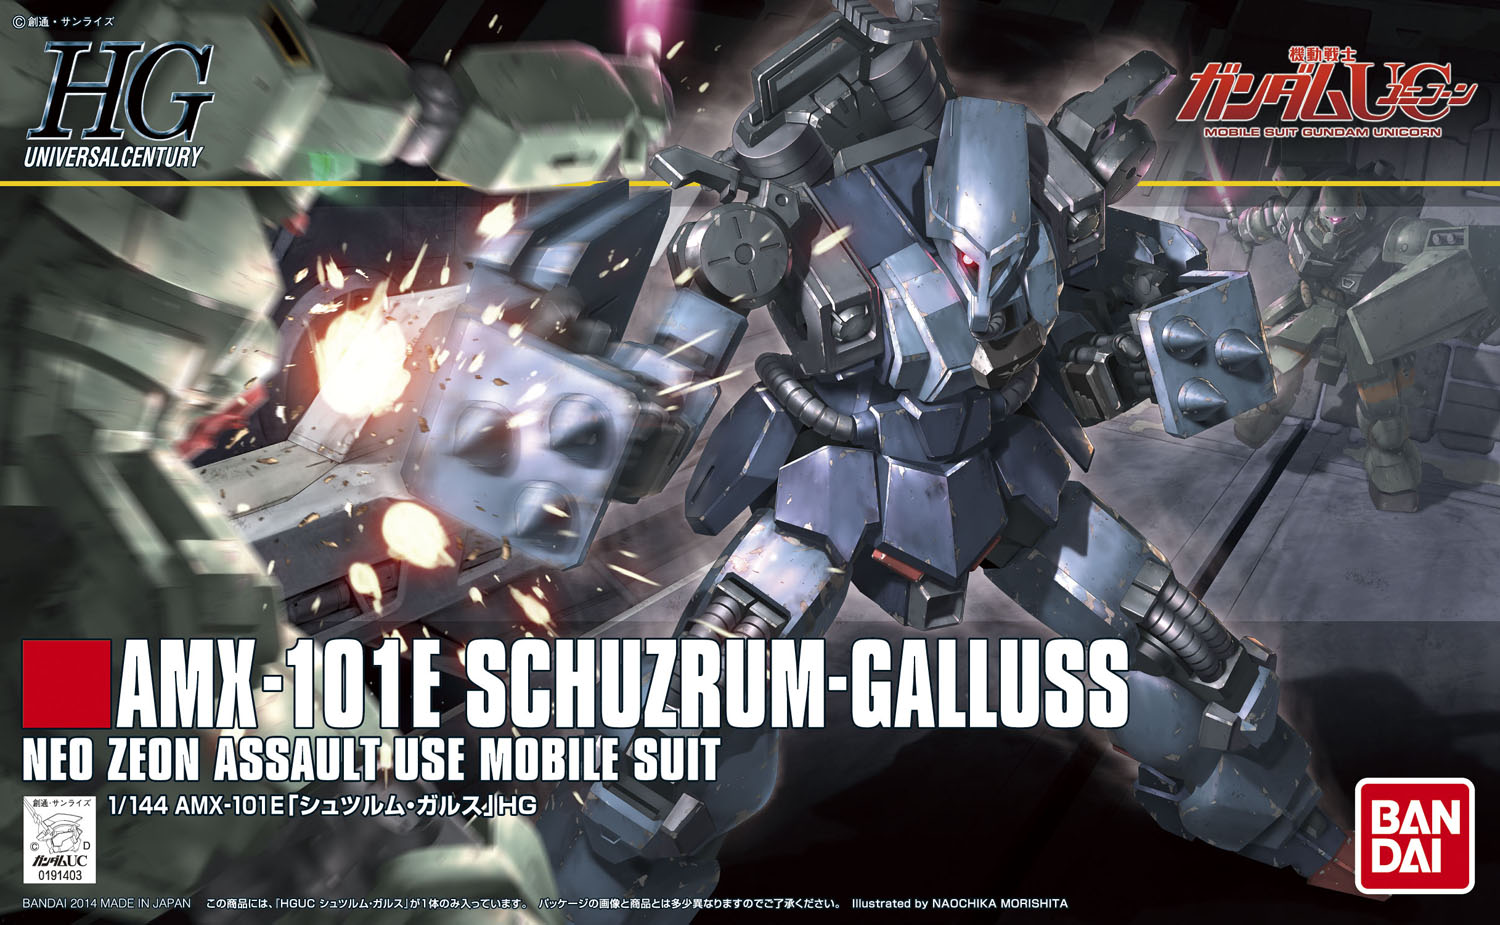 HGUC - AMX-101E Schuzrum-Galluss